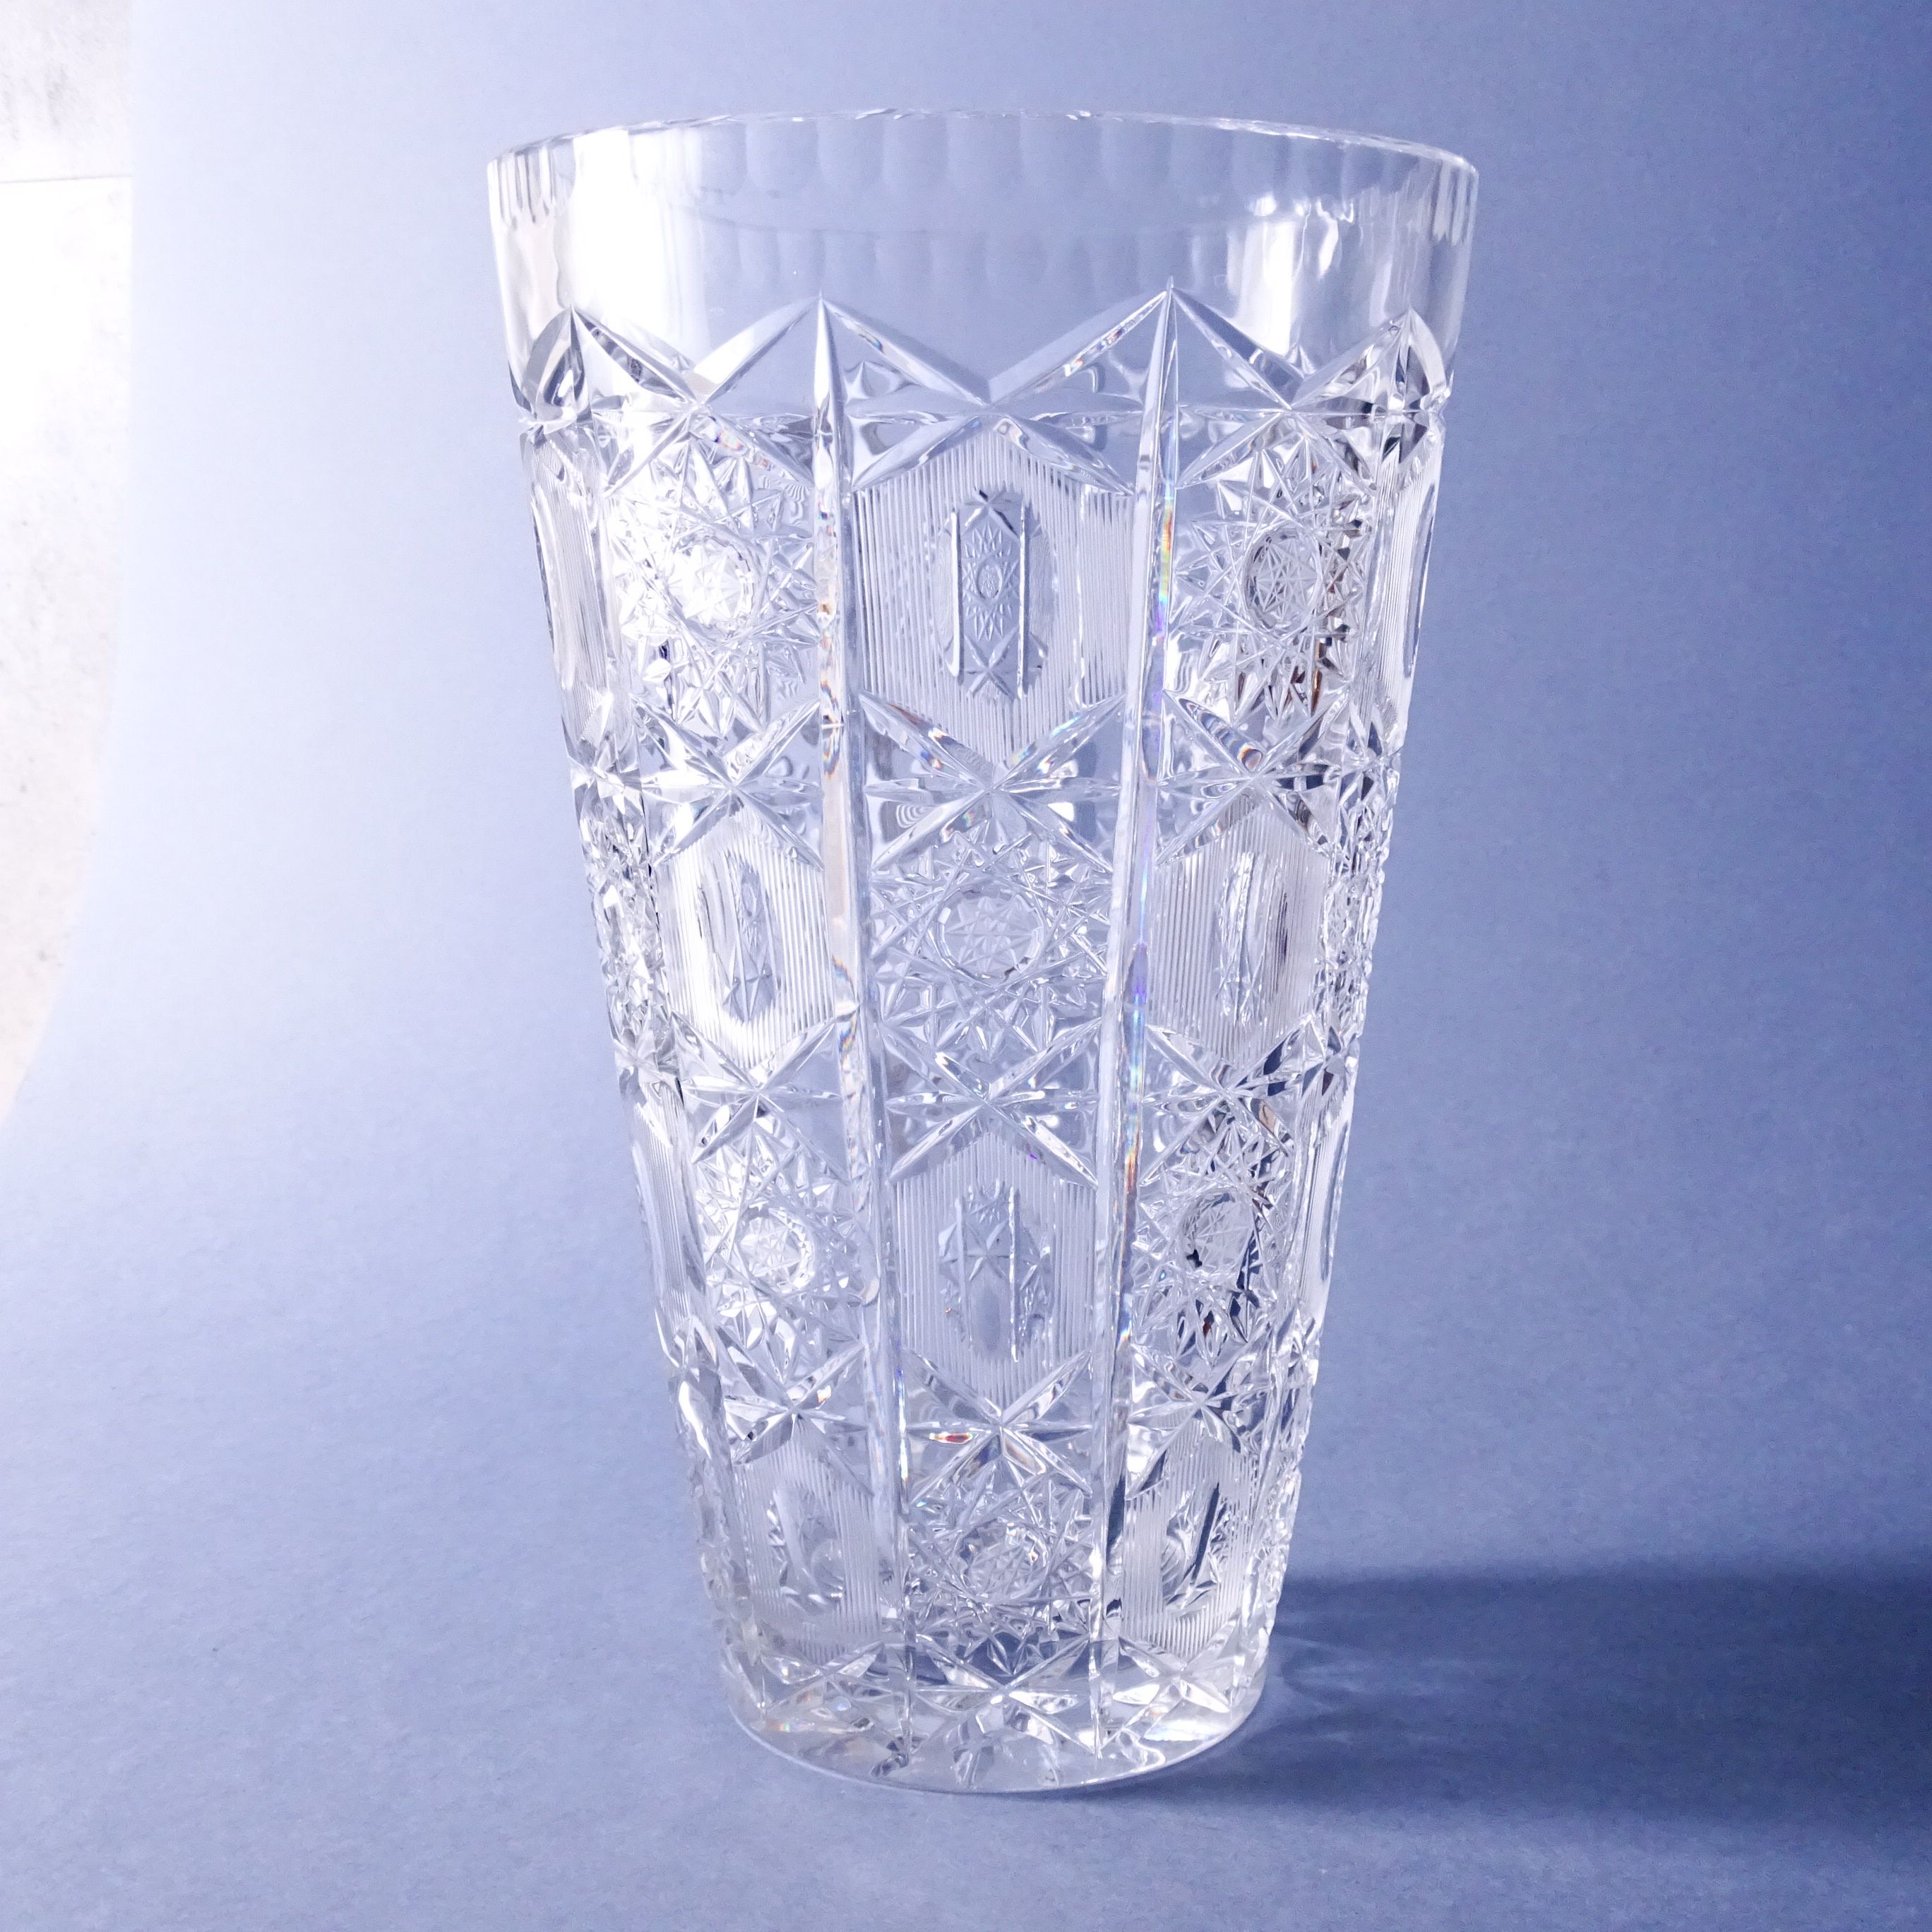 xxl wielki szlifowany kryształowy wazon